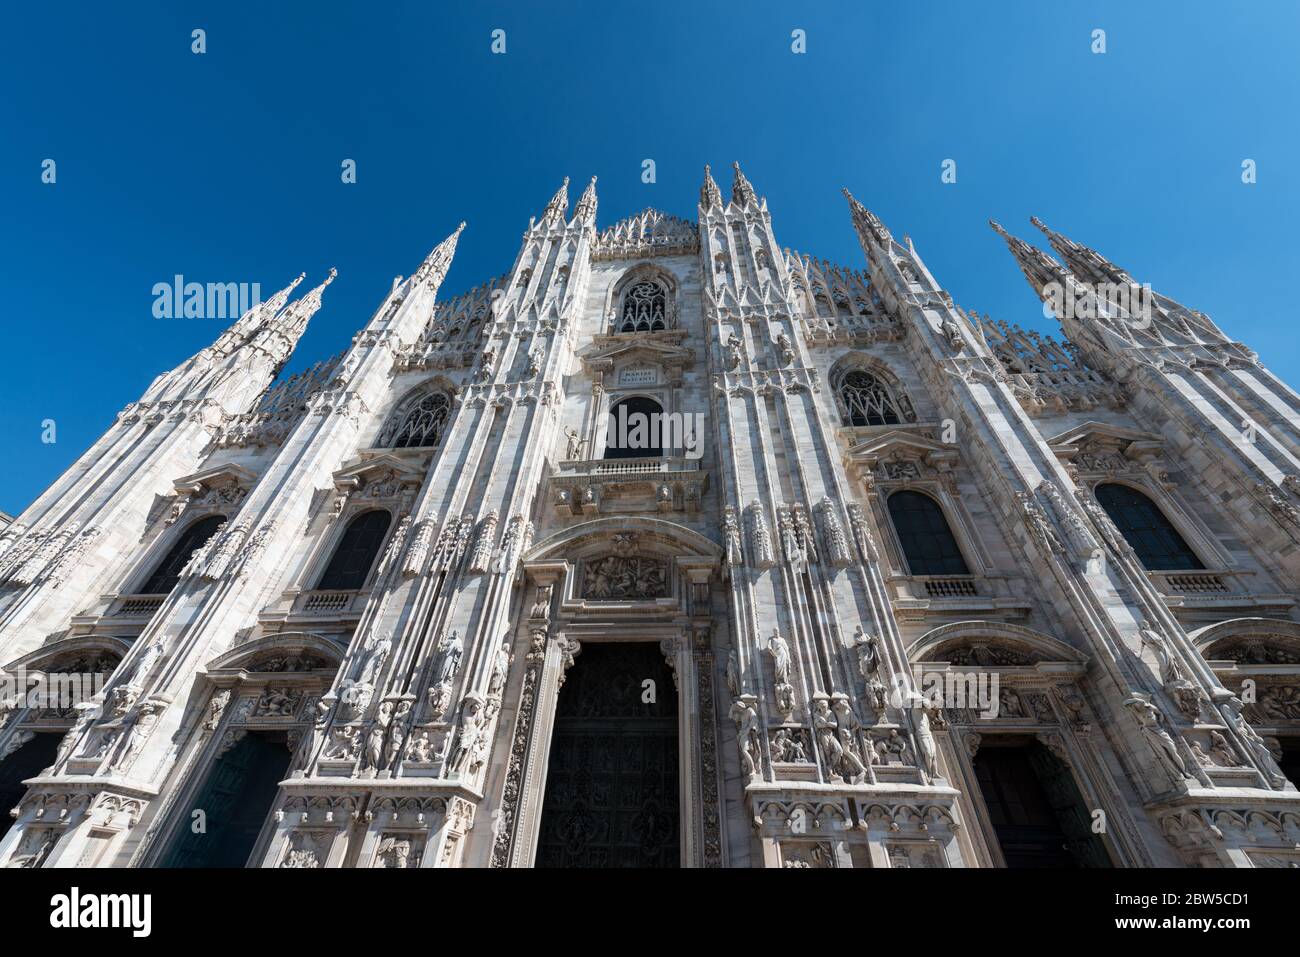 Imagen horizontal de la fachada del Duomo di Milano, una importante catedral católica de Milán, Italia. Foto de stock